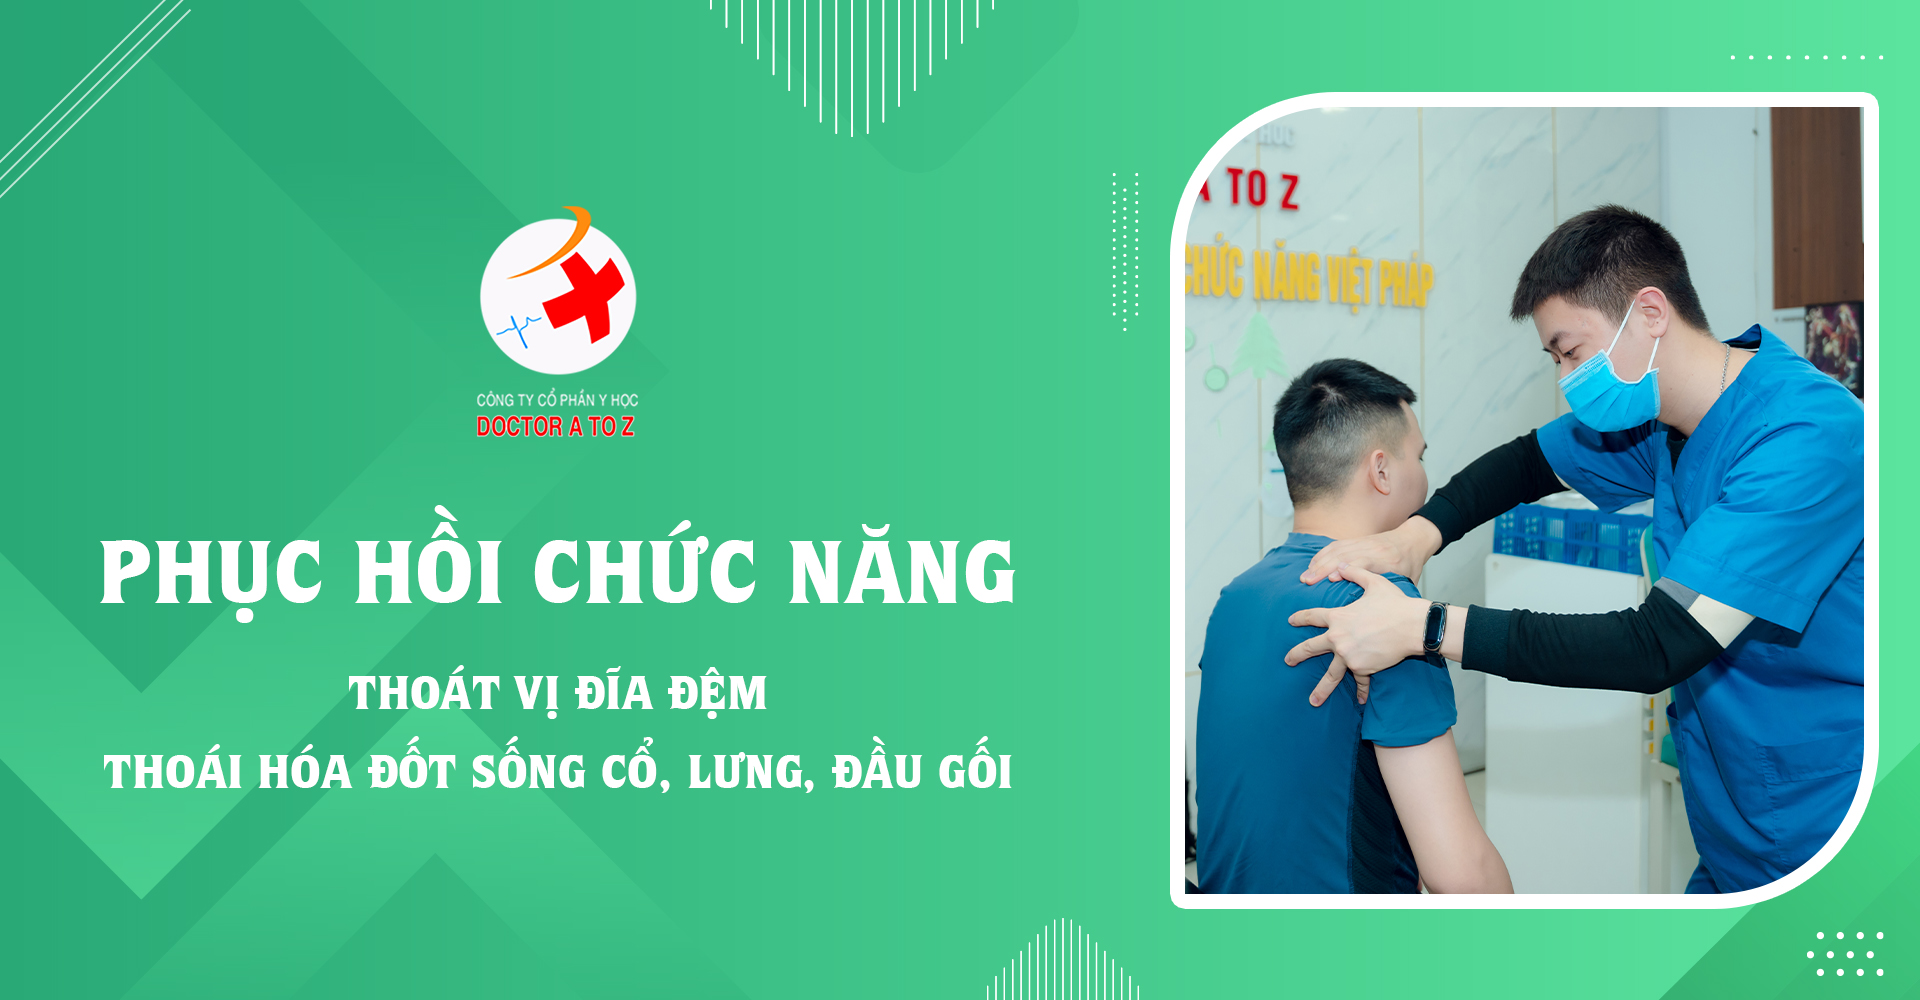 Trung tâm phục hồi chức năng Việt Pháp